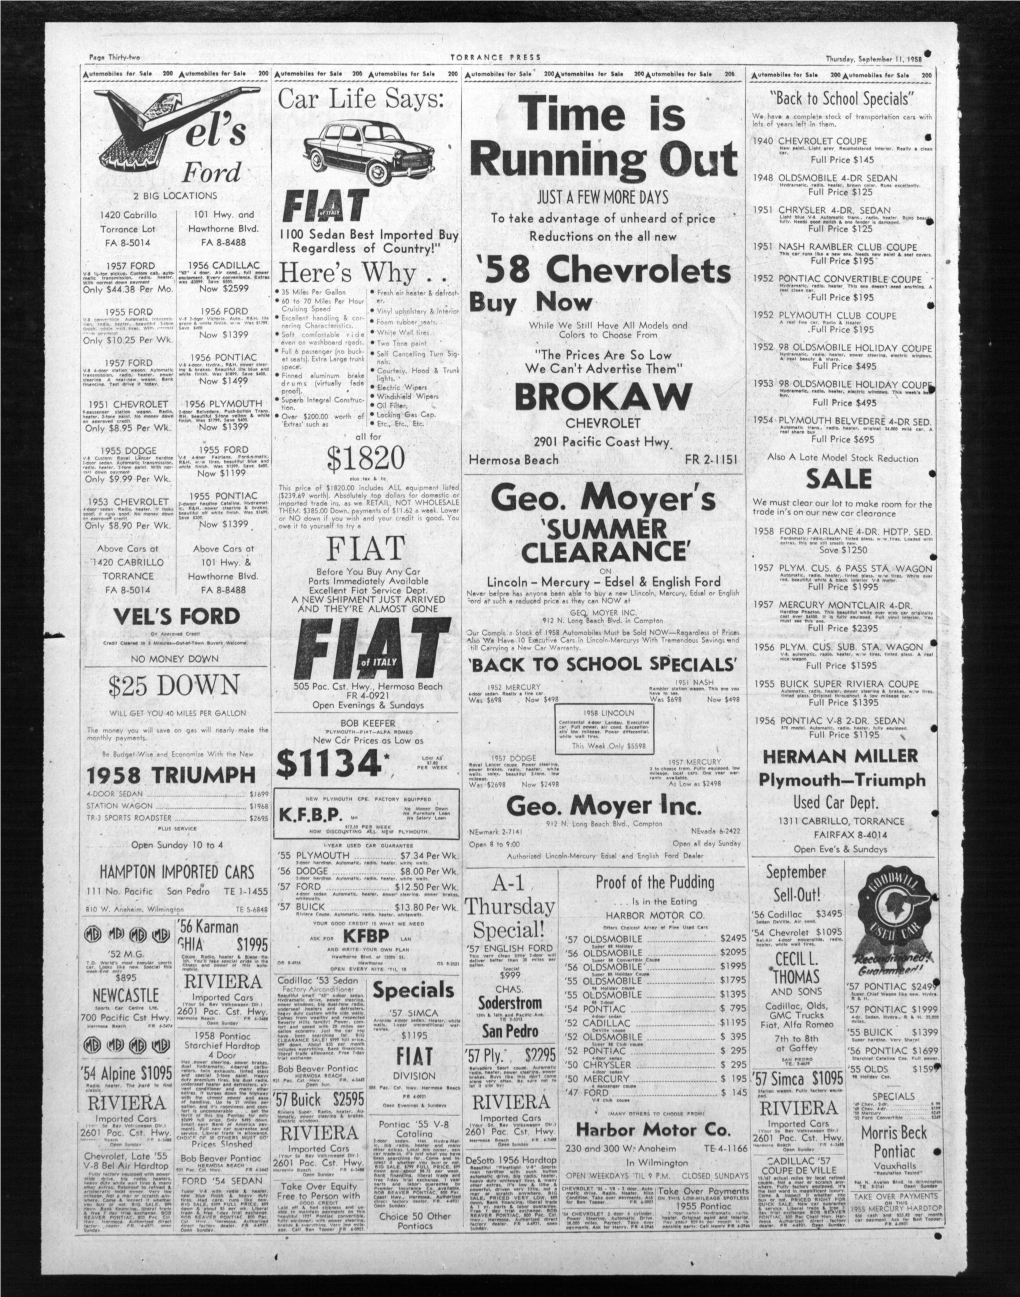 TORRANCE PRESS Thursday, September II, 1958